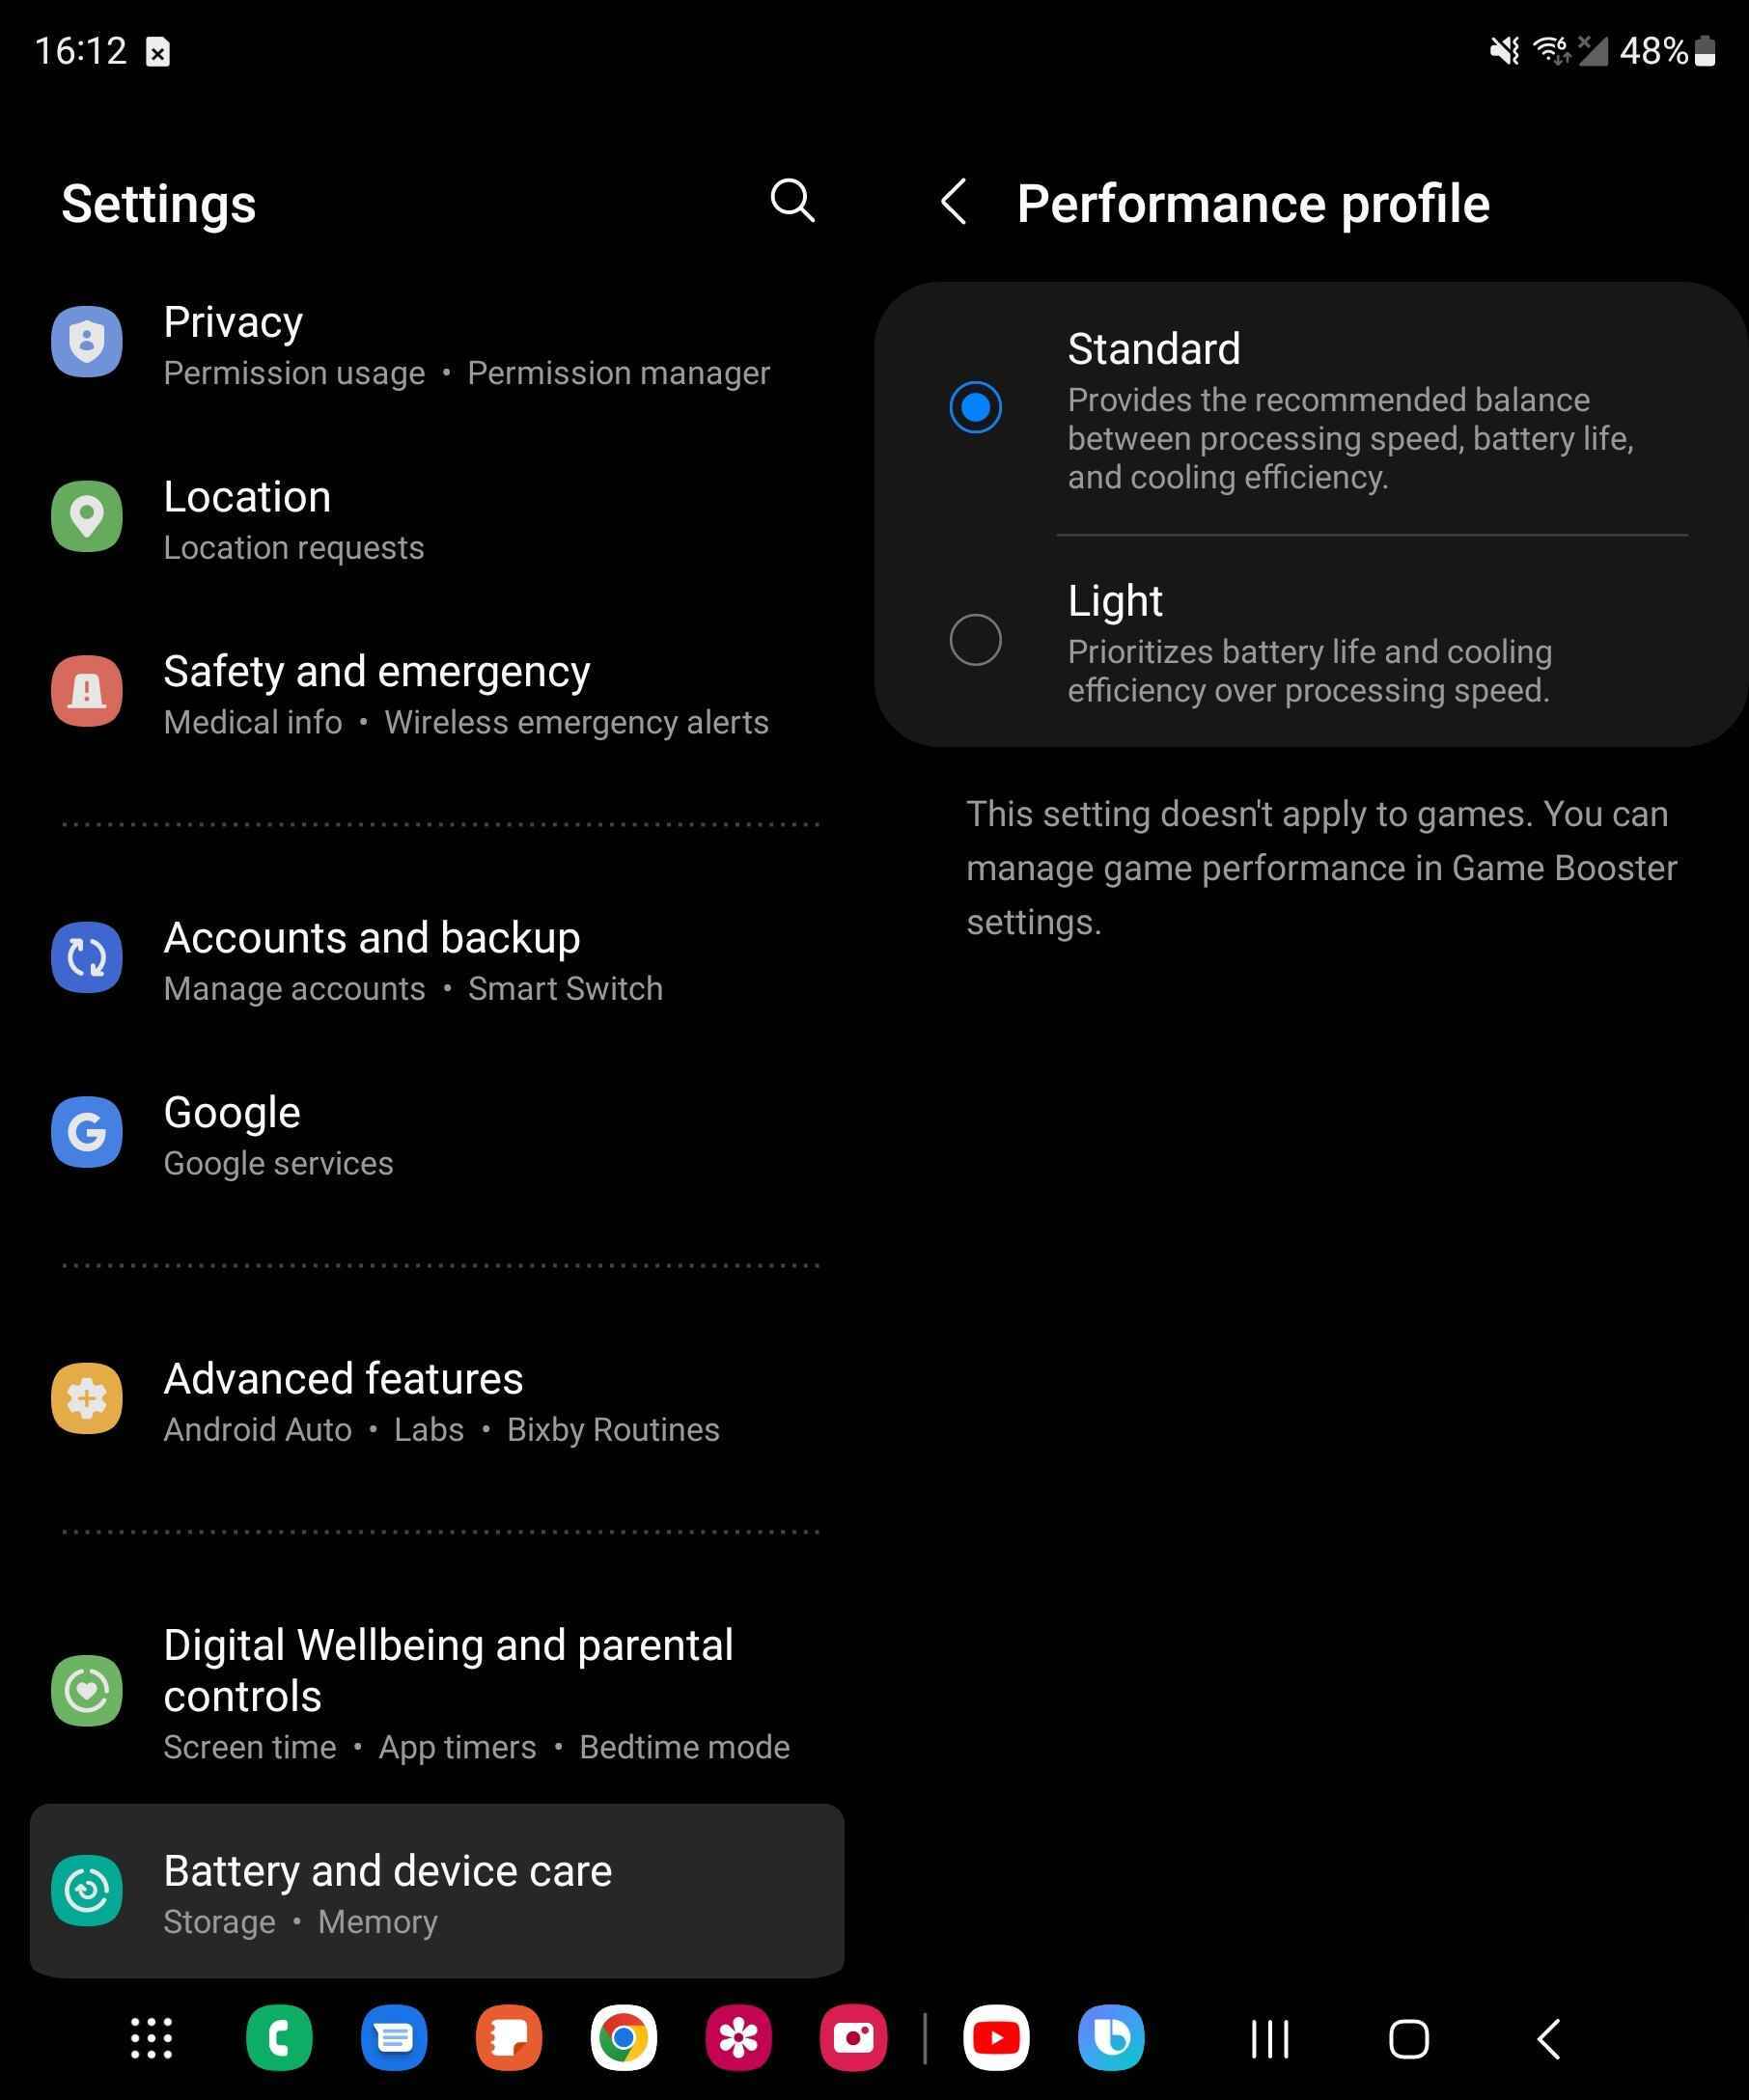 Yeni Z Fold 4 performans profili - Samsung'un yeni Galaxy Z Fold 4 'Light' performans profili pil ömrünü uzatıyor